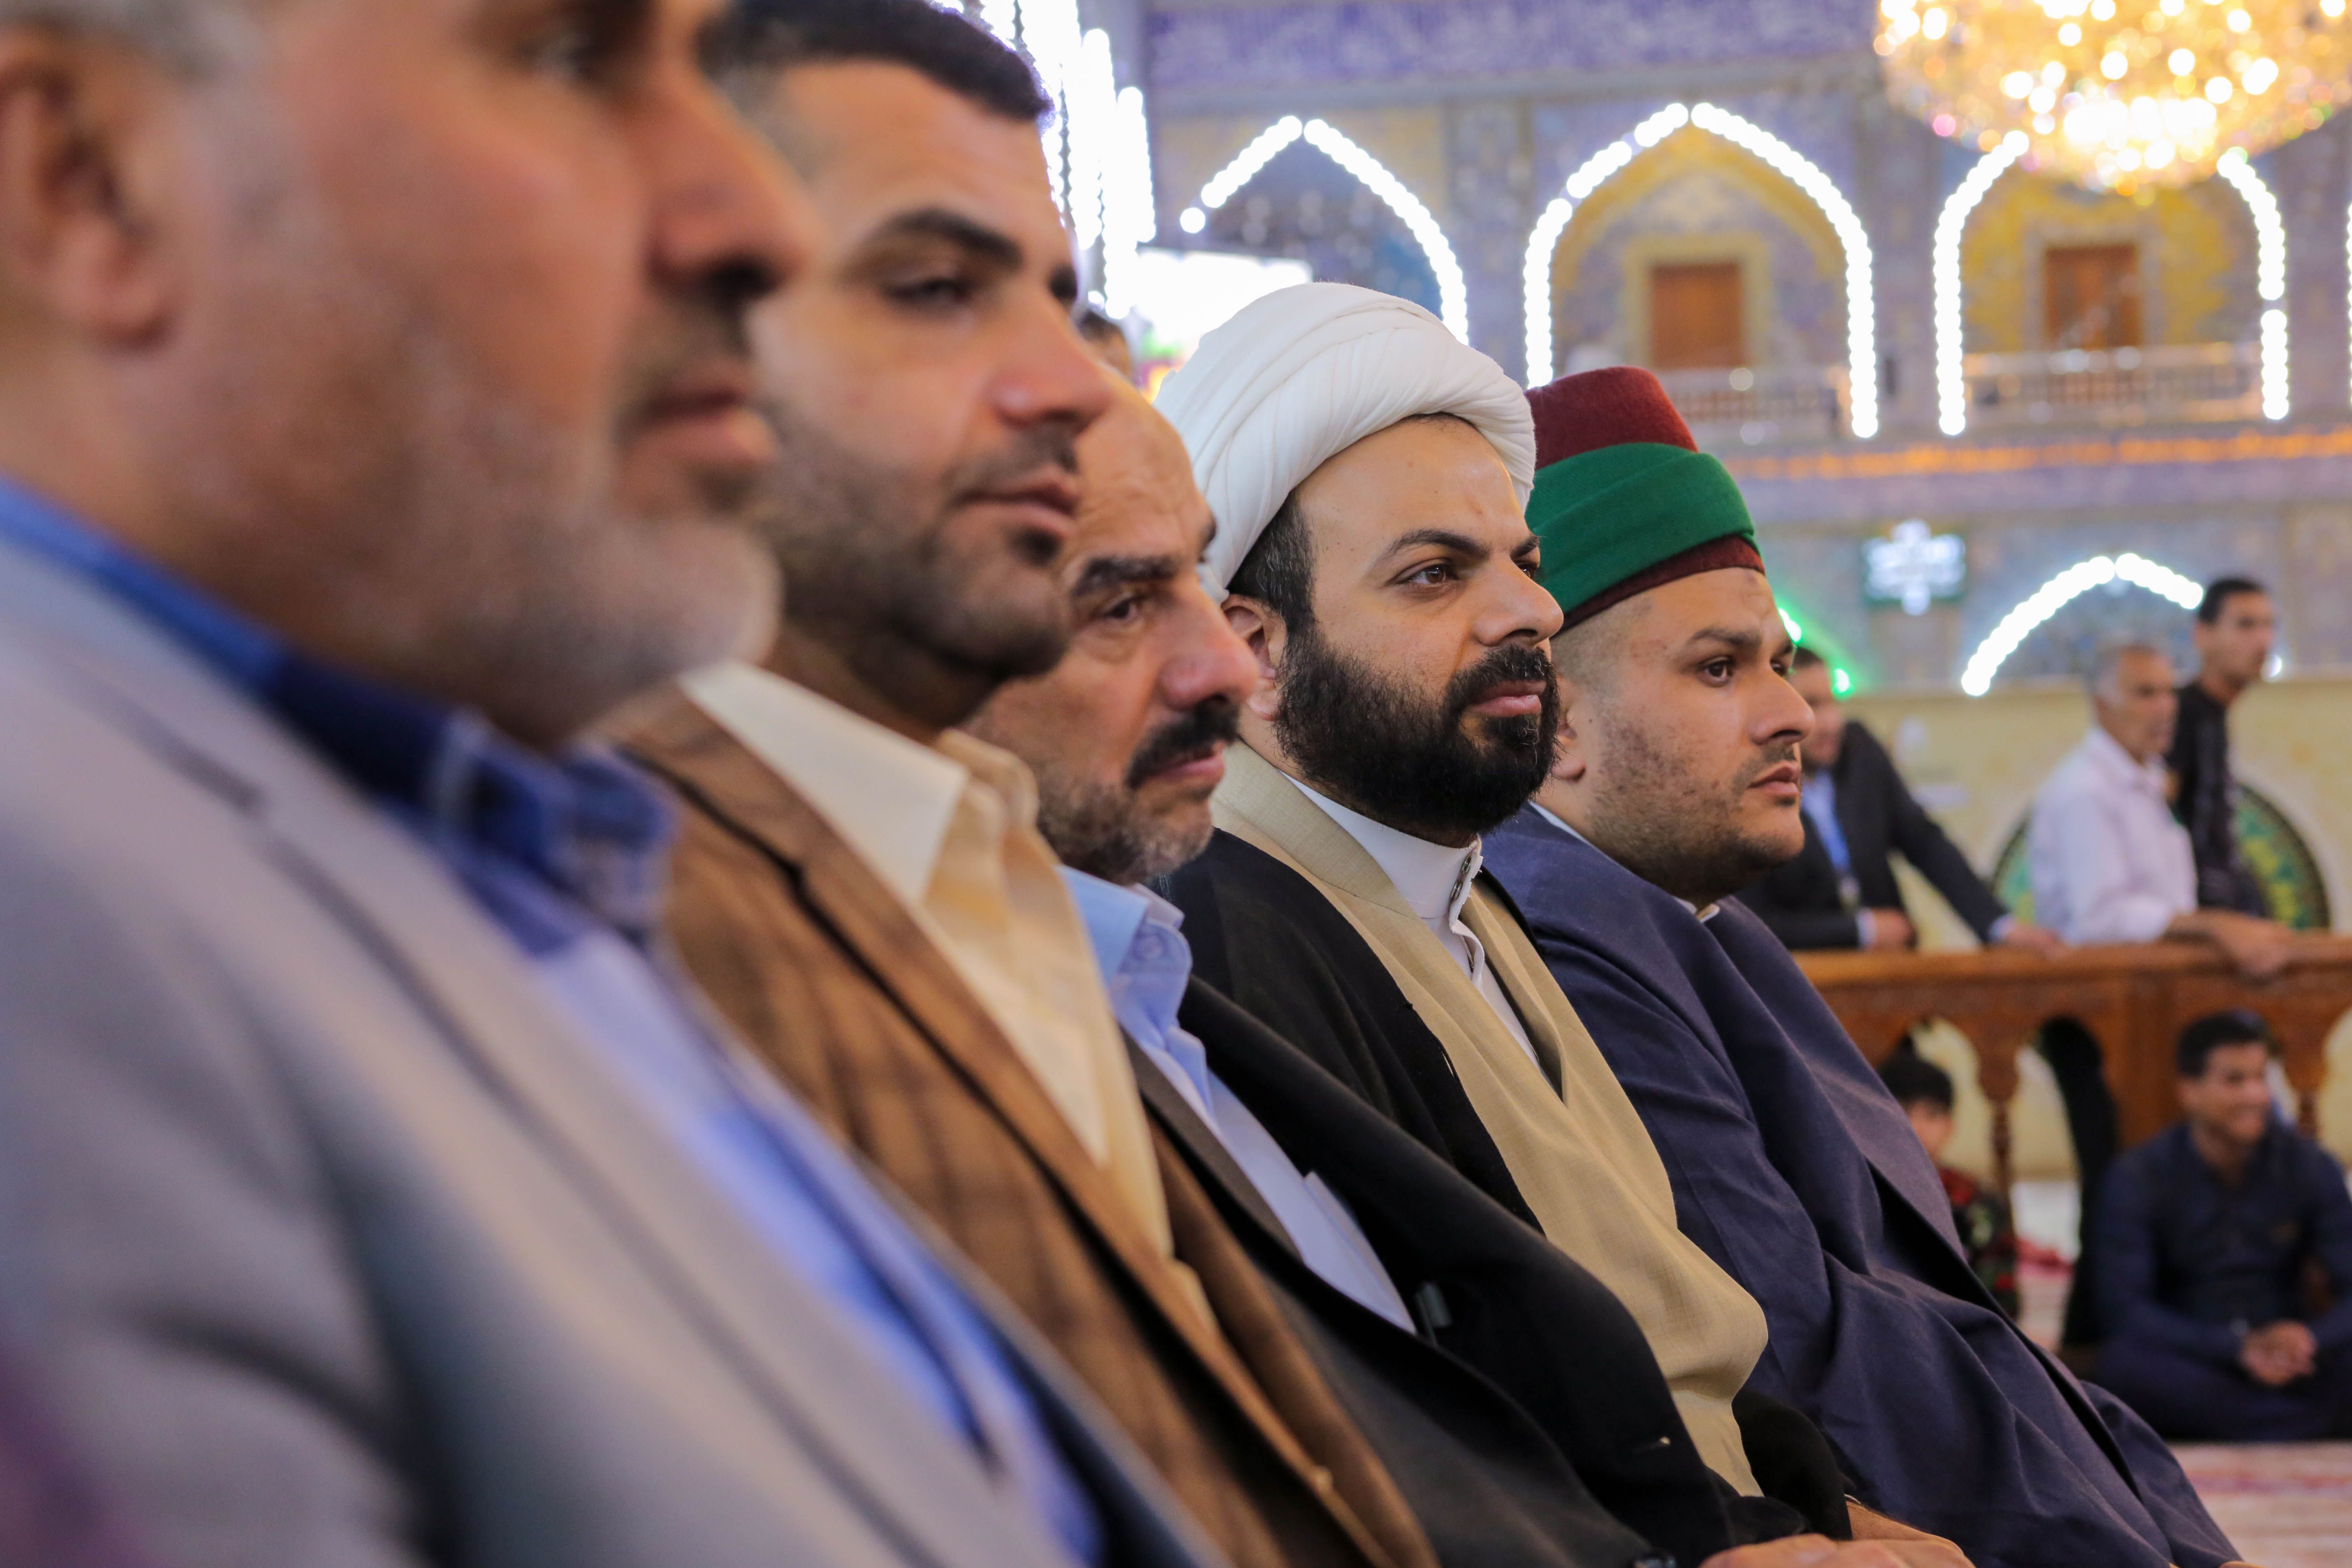 انطلاق فعاليات المسابقة القرآنية الفرقية الوطنيّة الخامسة بمشاركة فرقاً يمثلون مختلف محافظات وطننا الحبيب